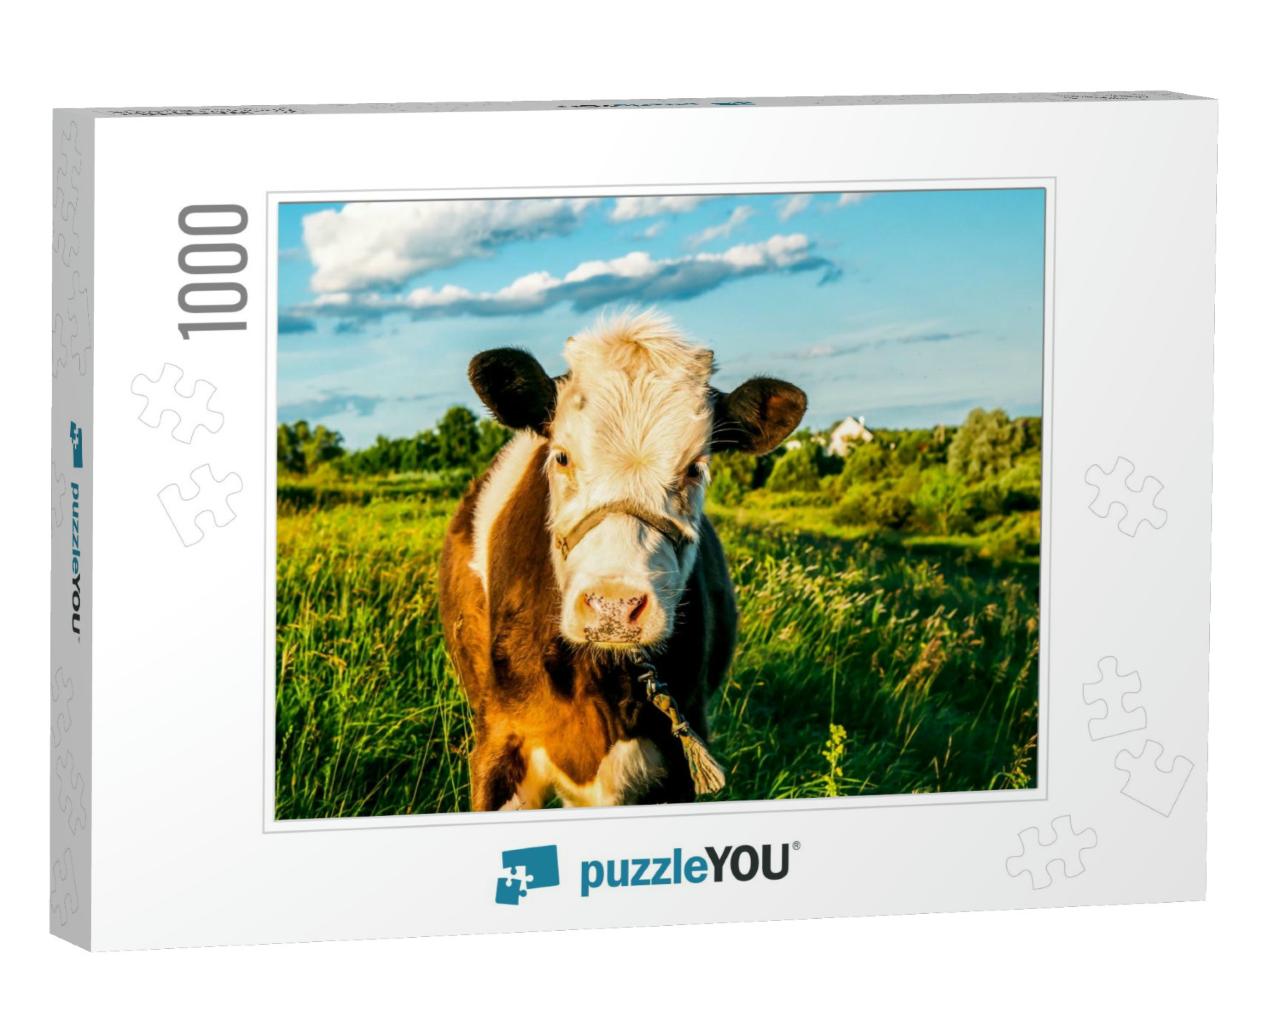 Cow Calf Portrait on Farm Pasture. Cute Calf Portrait. Ca... Jigsaw Puzzle with 1000 pieces